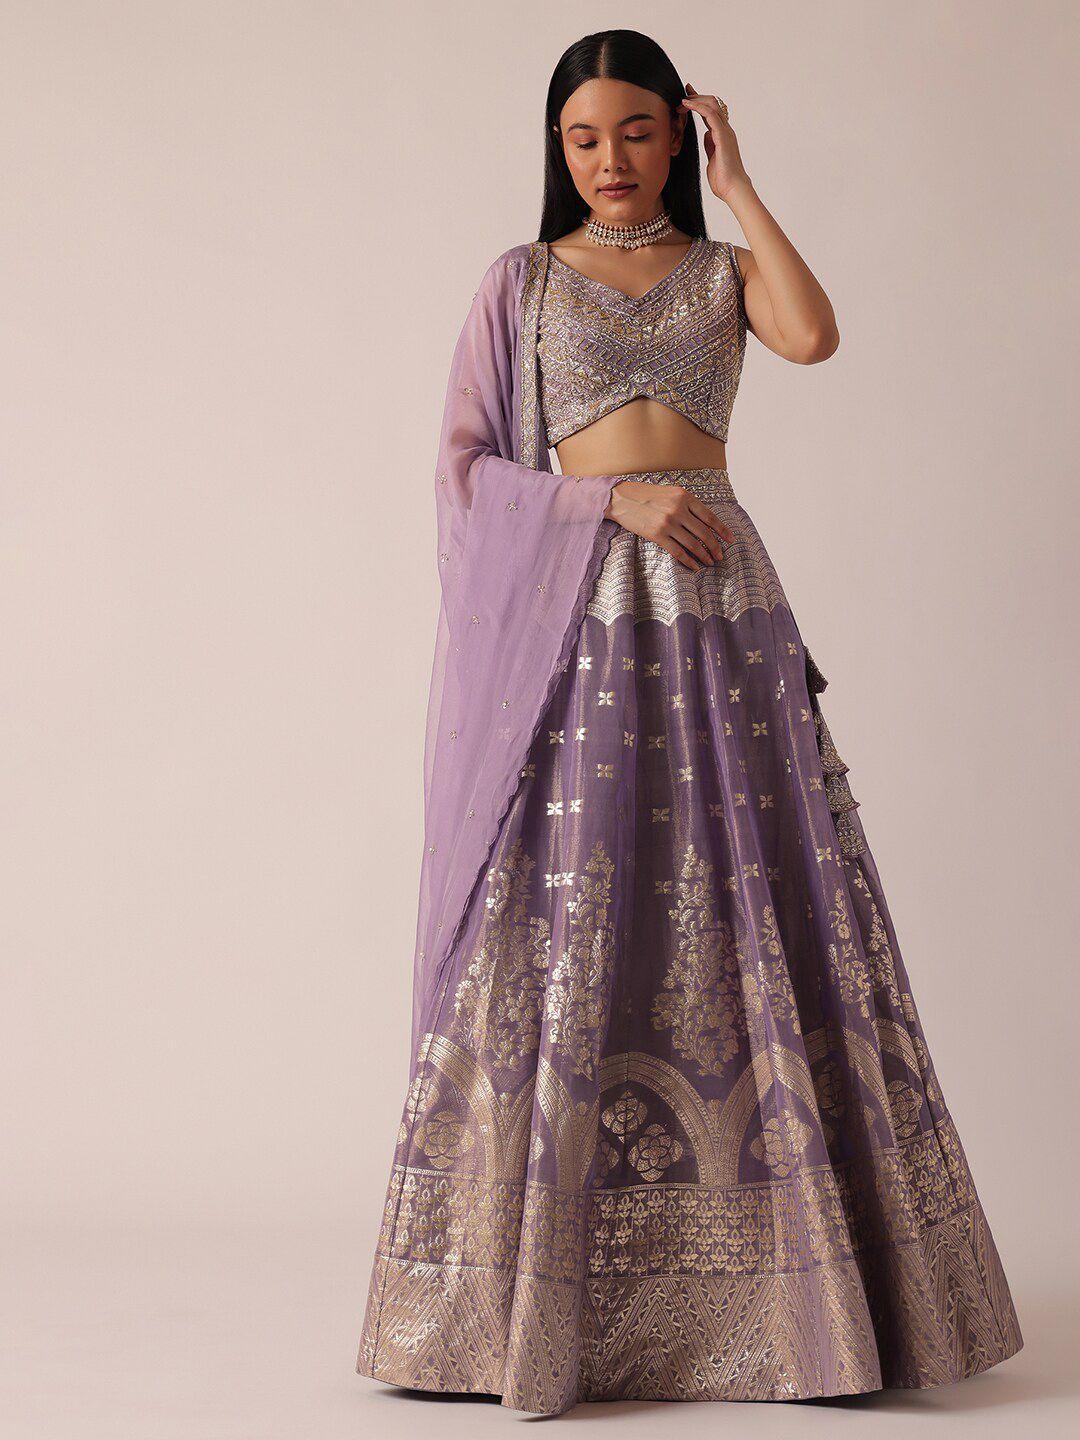 kalki fashion embellished ready to wear banarasi lehenga & blouse with dupatta